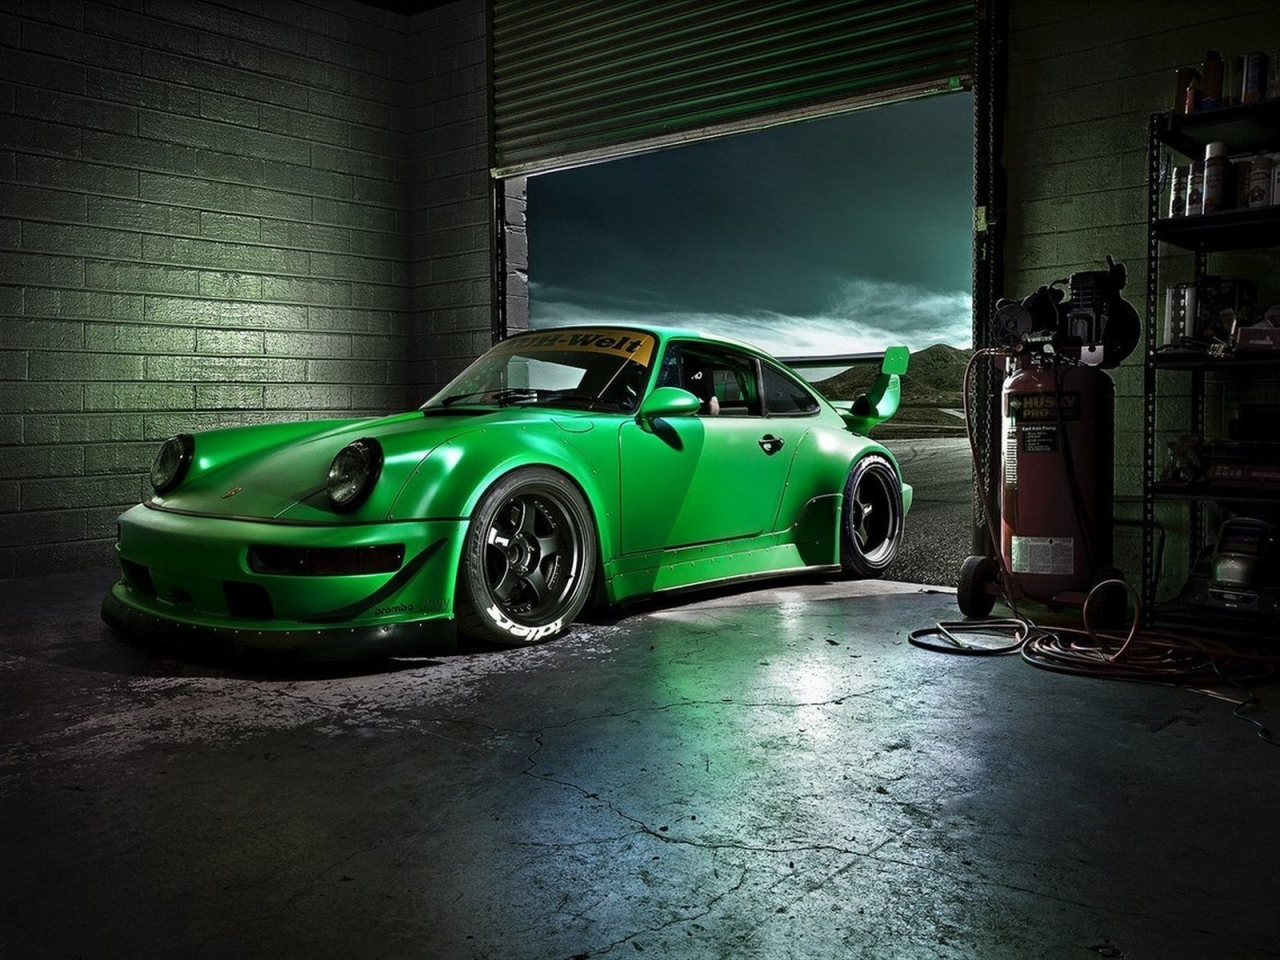 Green Porsche Carrera for 1280 x 960 resolution